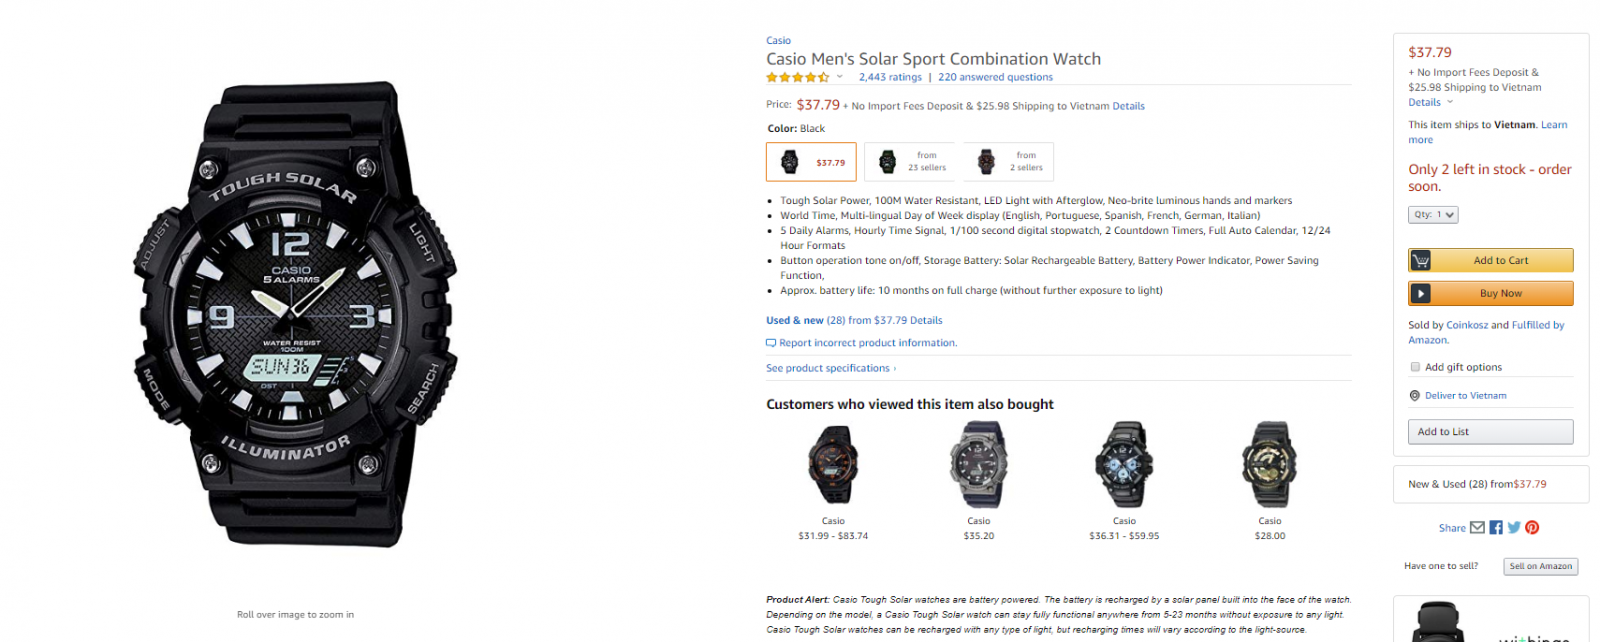 Mua đồng hồ trên Amazon